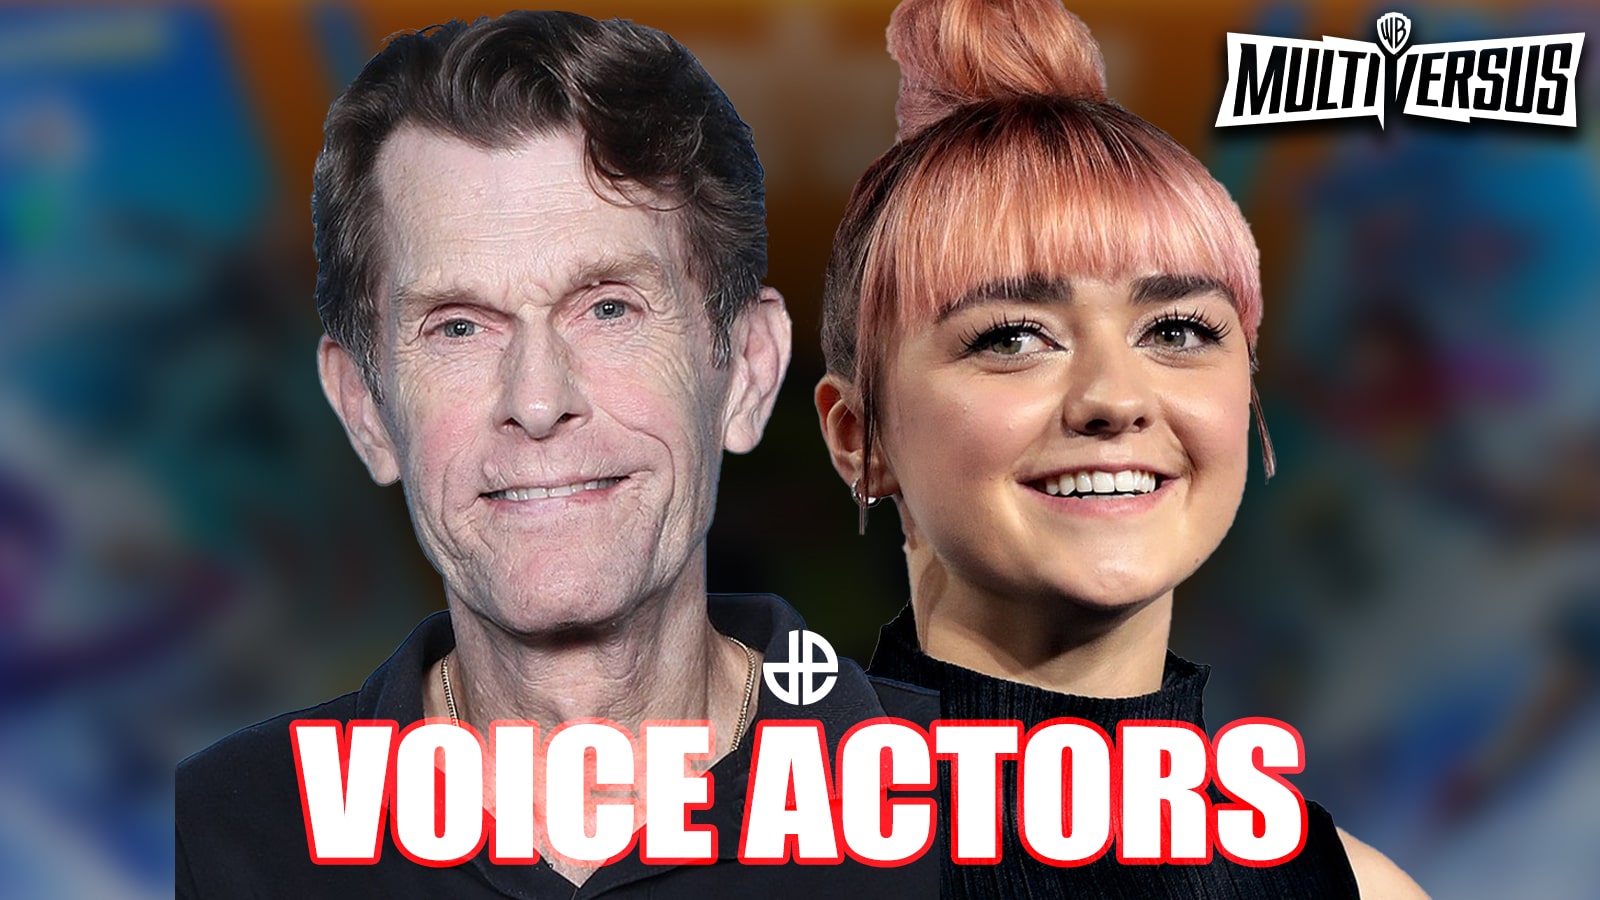 multiversus voice actors